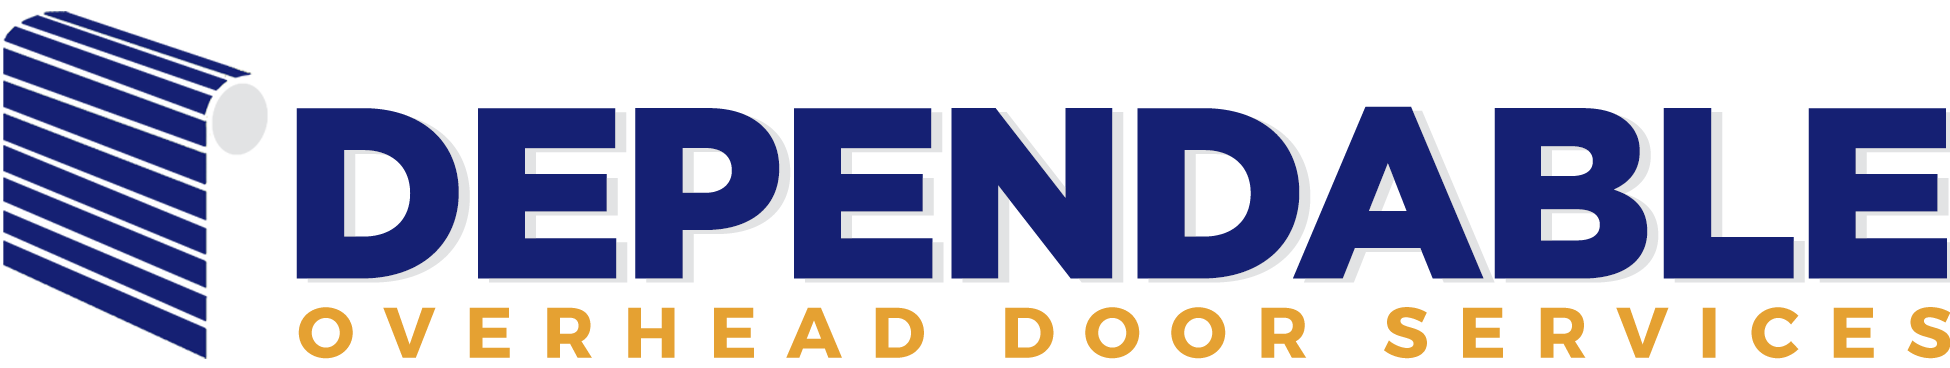 Dependable Overhead Door Logo